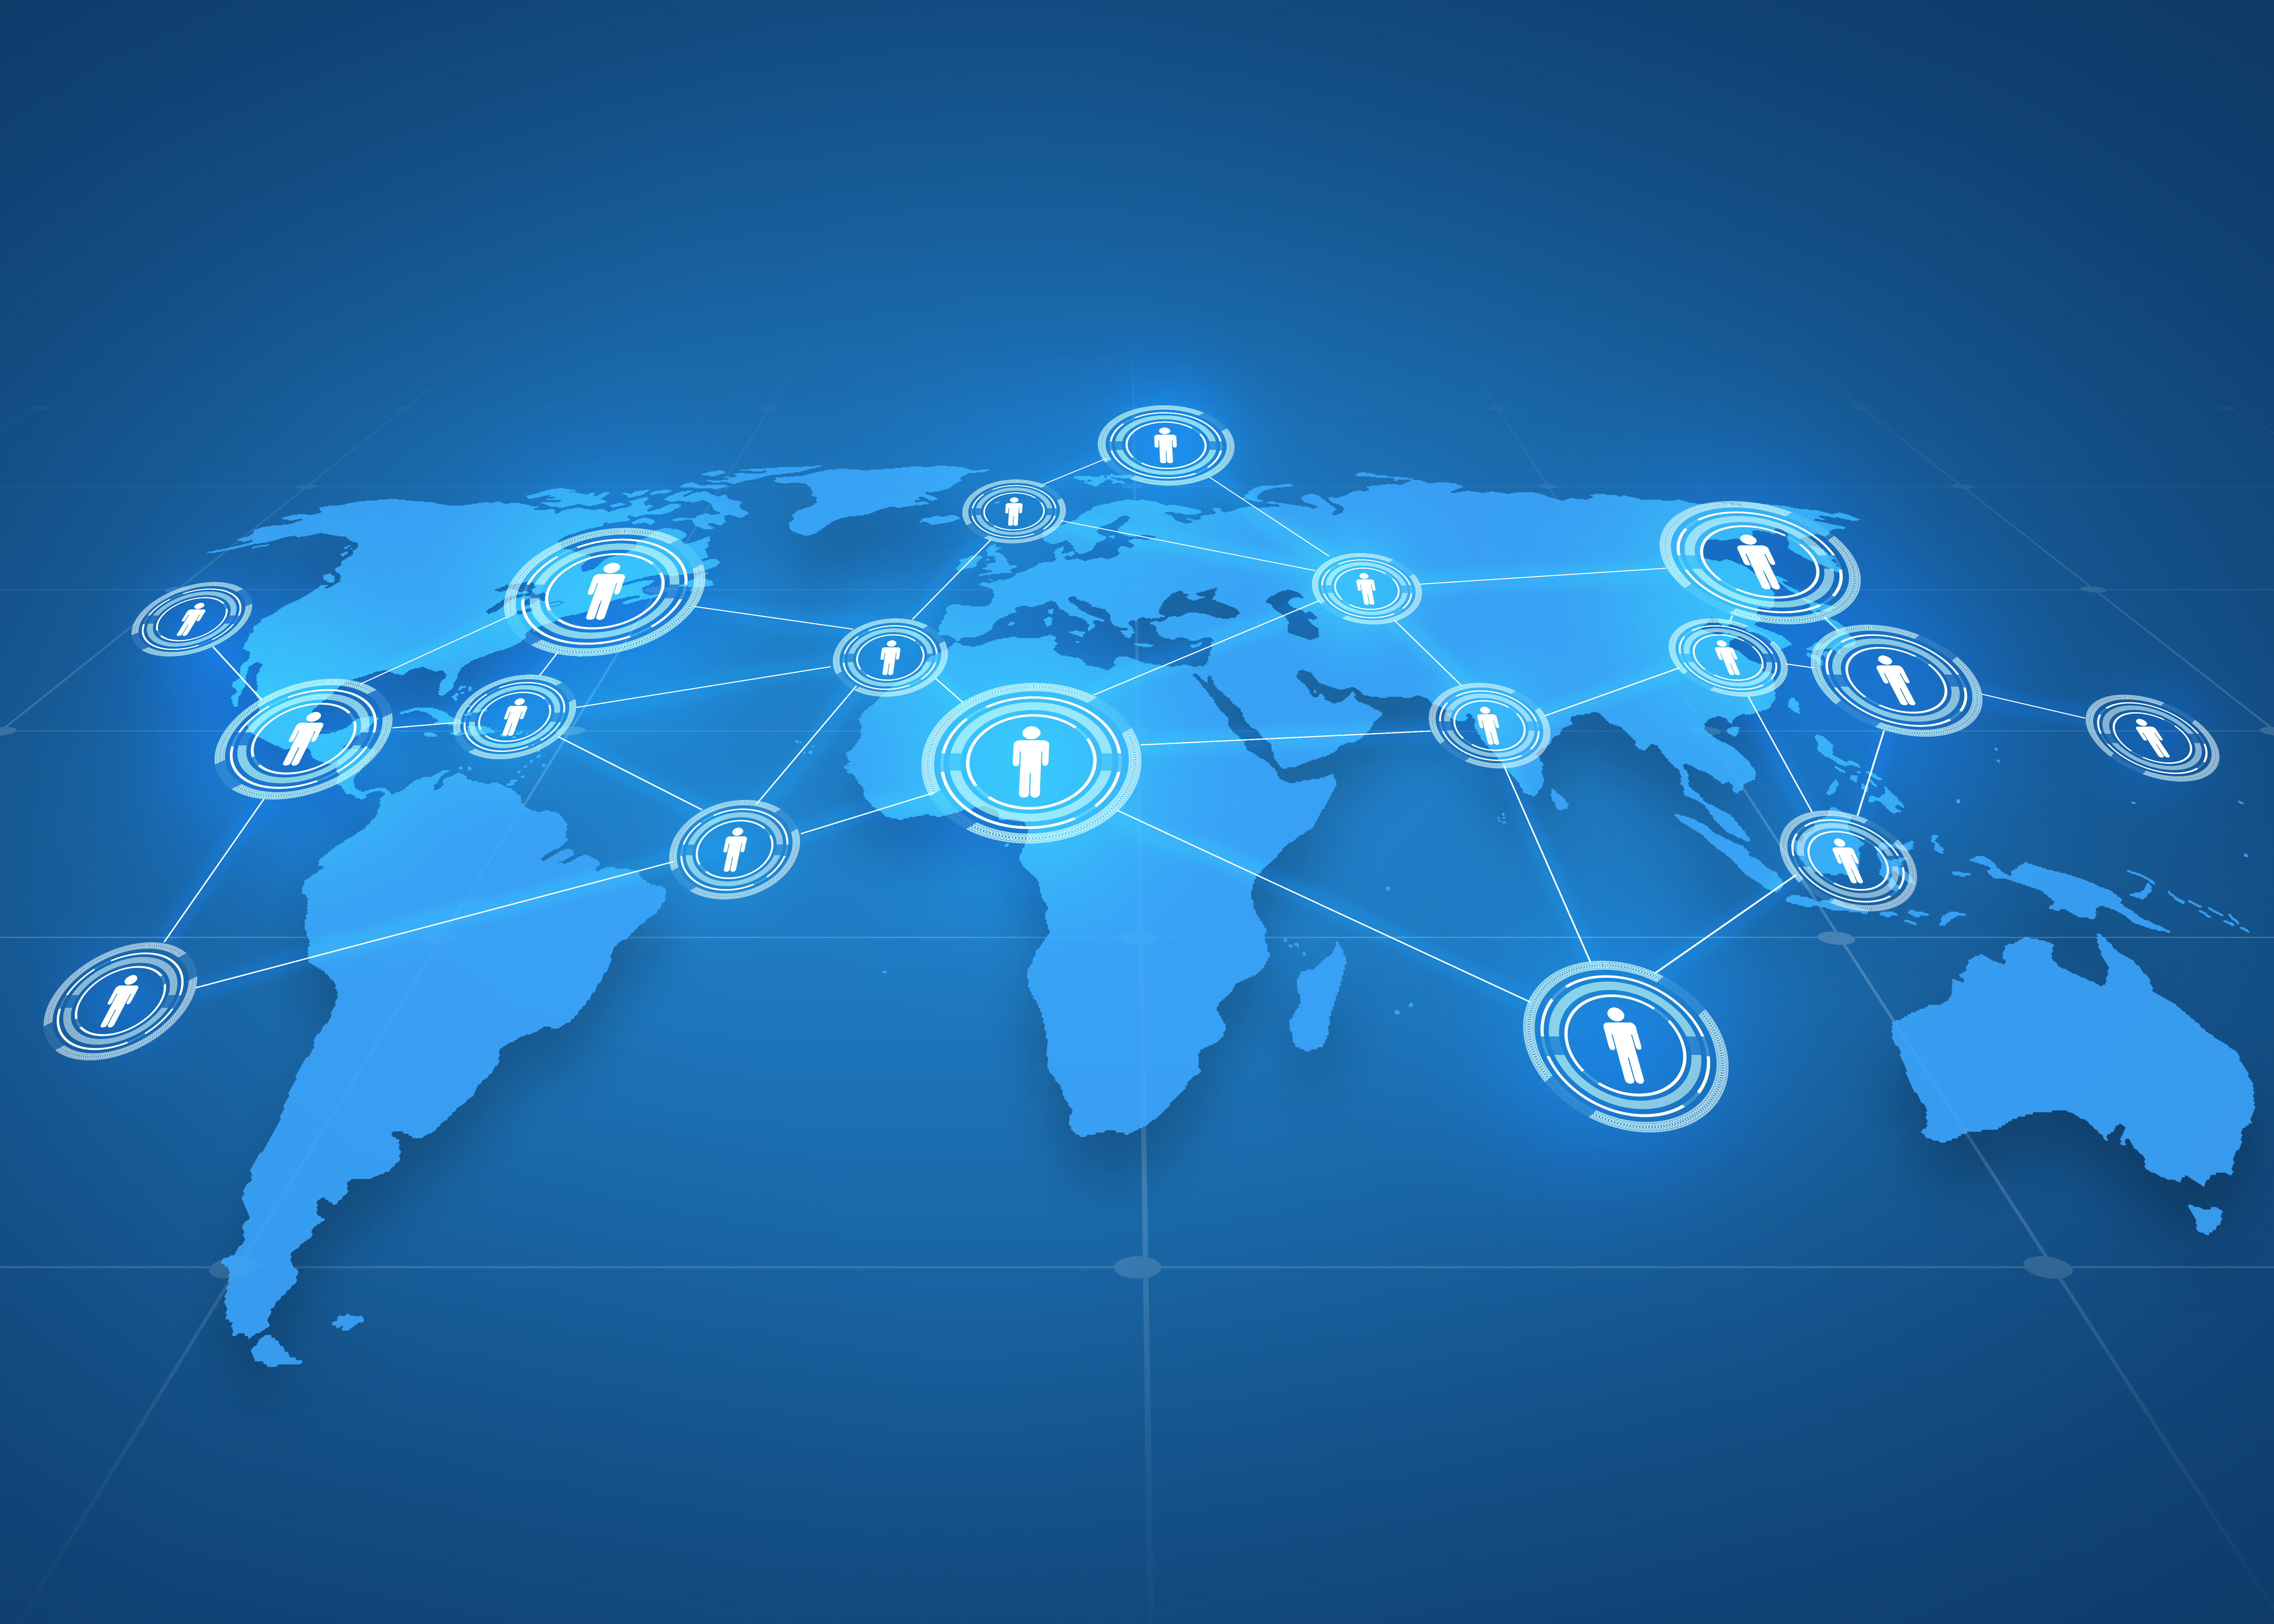 Concepte global de negocis, xarxes socials, mitjans de comunicació i tecnologia: projecció de mapa del món amb icones de persones sobre fons blau